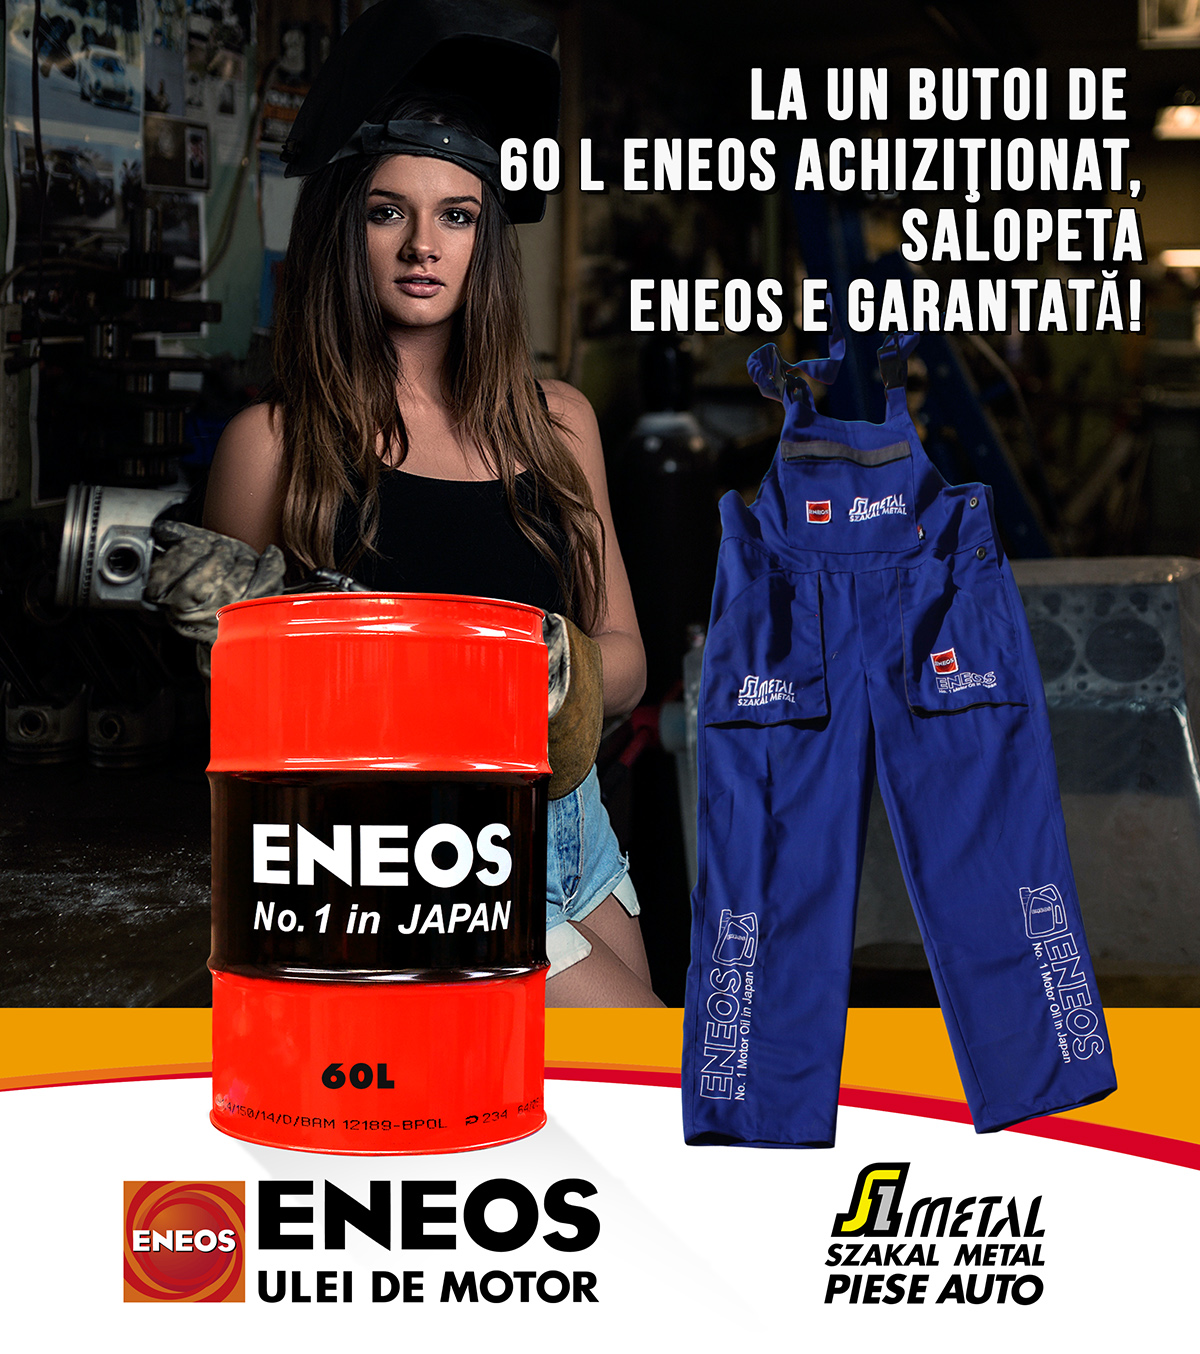 Promoţie ENEOS cu salopeta gratis